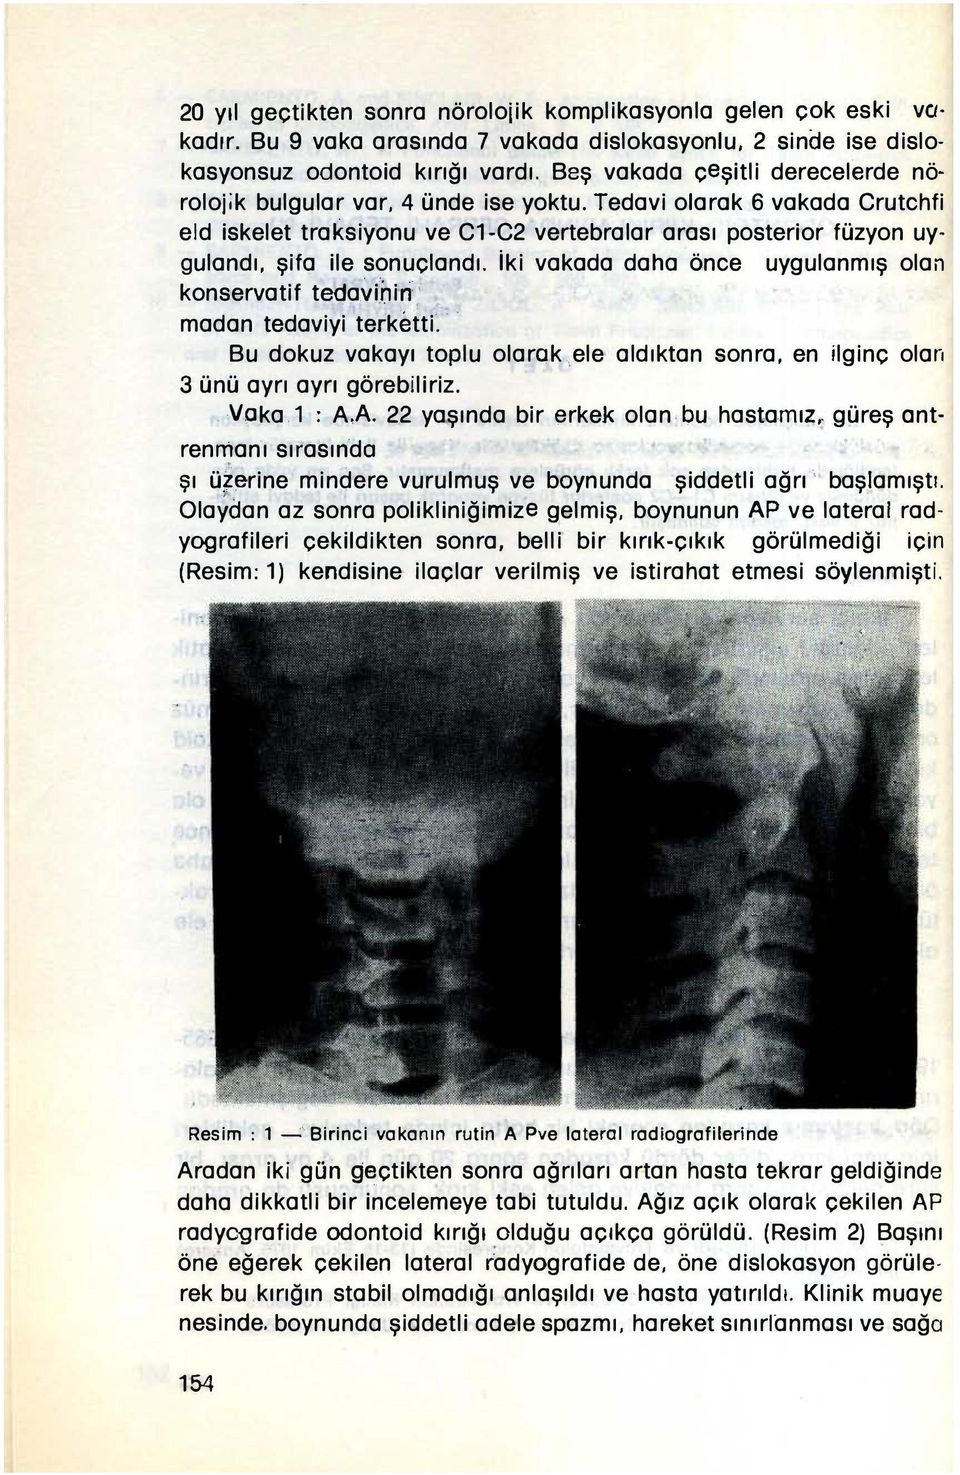 Tedavi olarak 6 vakada Crutchfi eld iskelet traksiyonu ve C1-C2 vertebralar arası posterior füzyon uygulandı, şifa ile sonuçlandı. jki vakada daha önce konservatif t a.